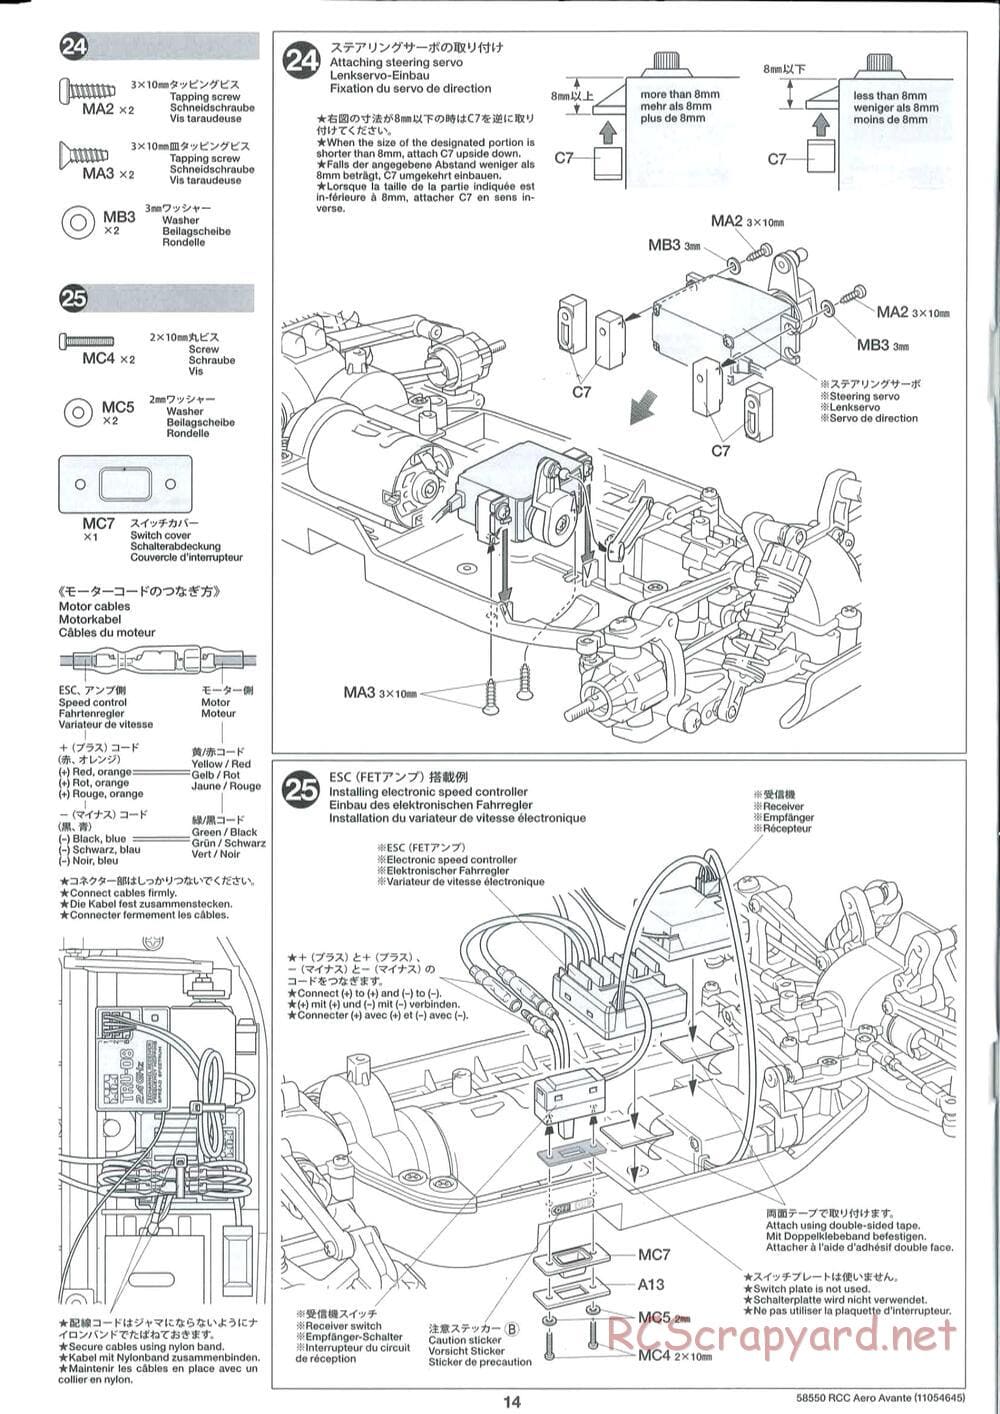 Tamiya - Aero Avante Chassis - Manual - Page 14